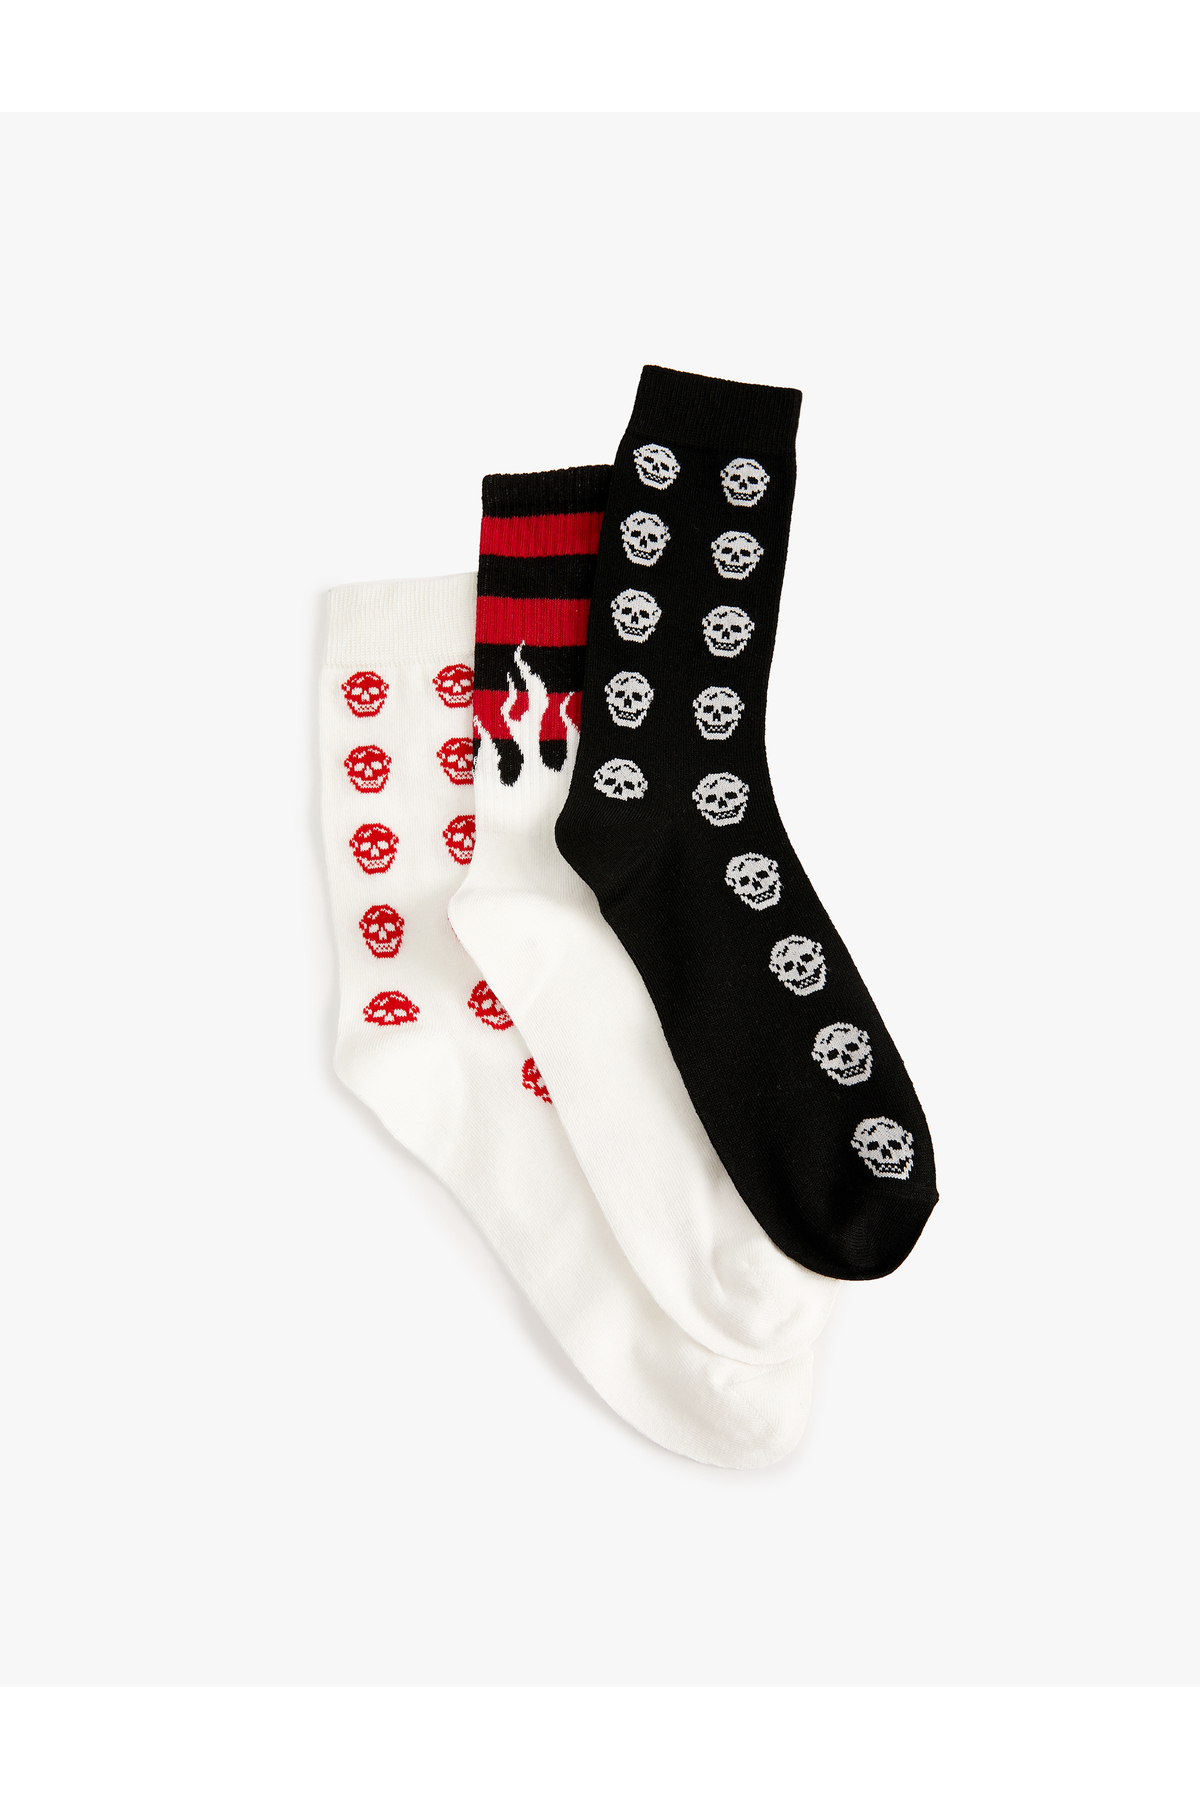 Koton 3-Piece Socks Set Skull Themed